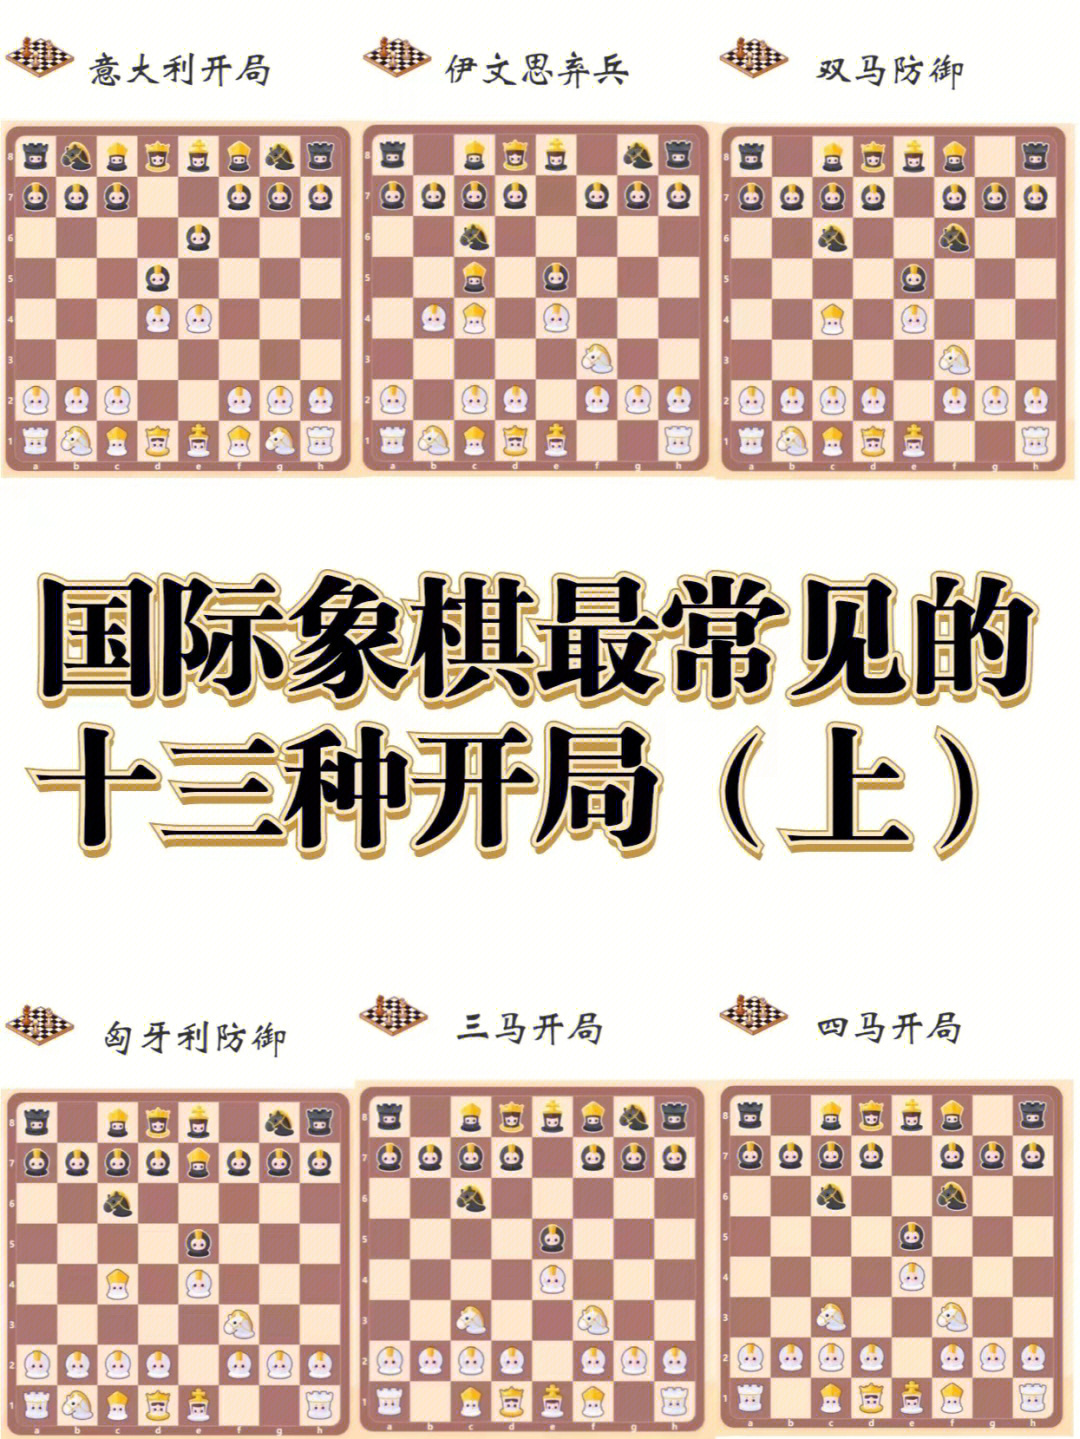 是国际象棋的开局技巧中为古老的一个,至今大约已有500年历史,在19